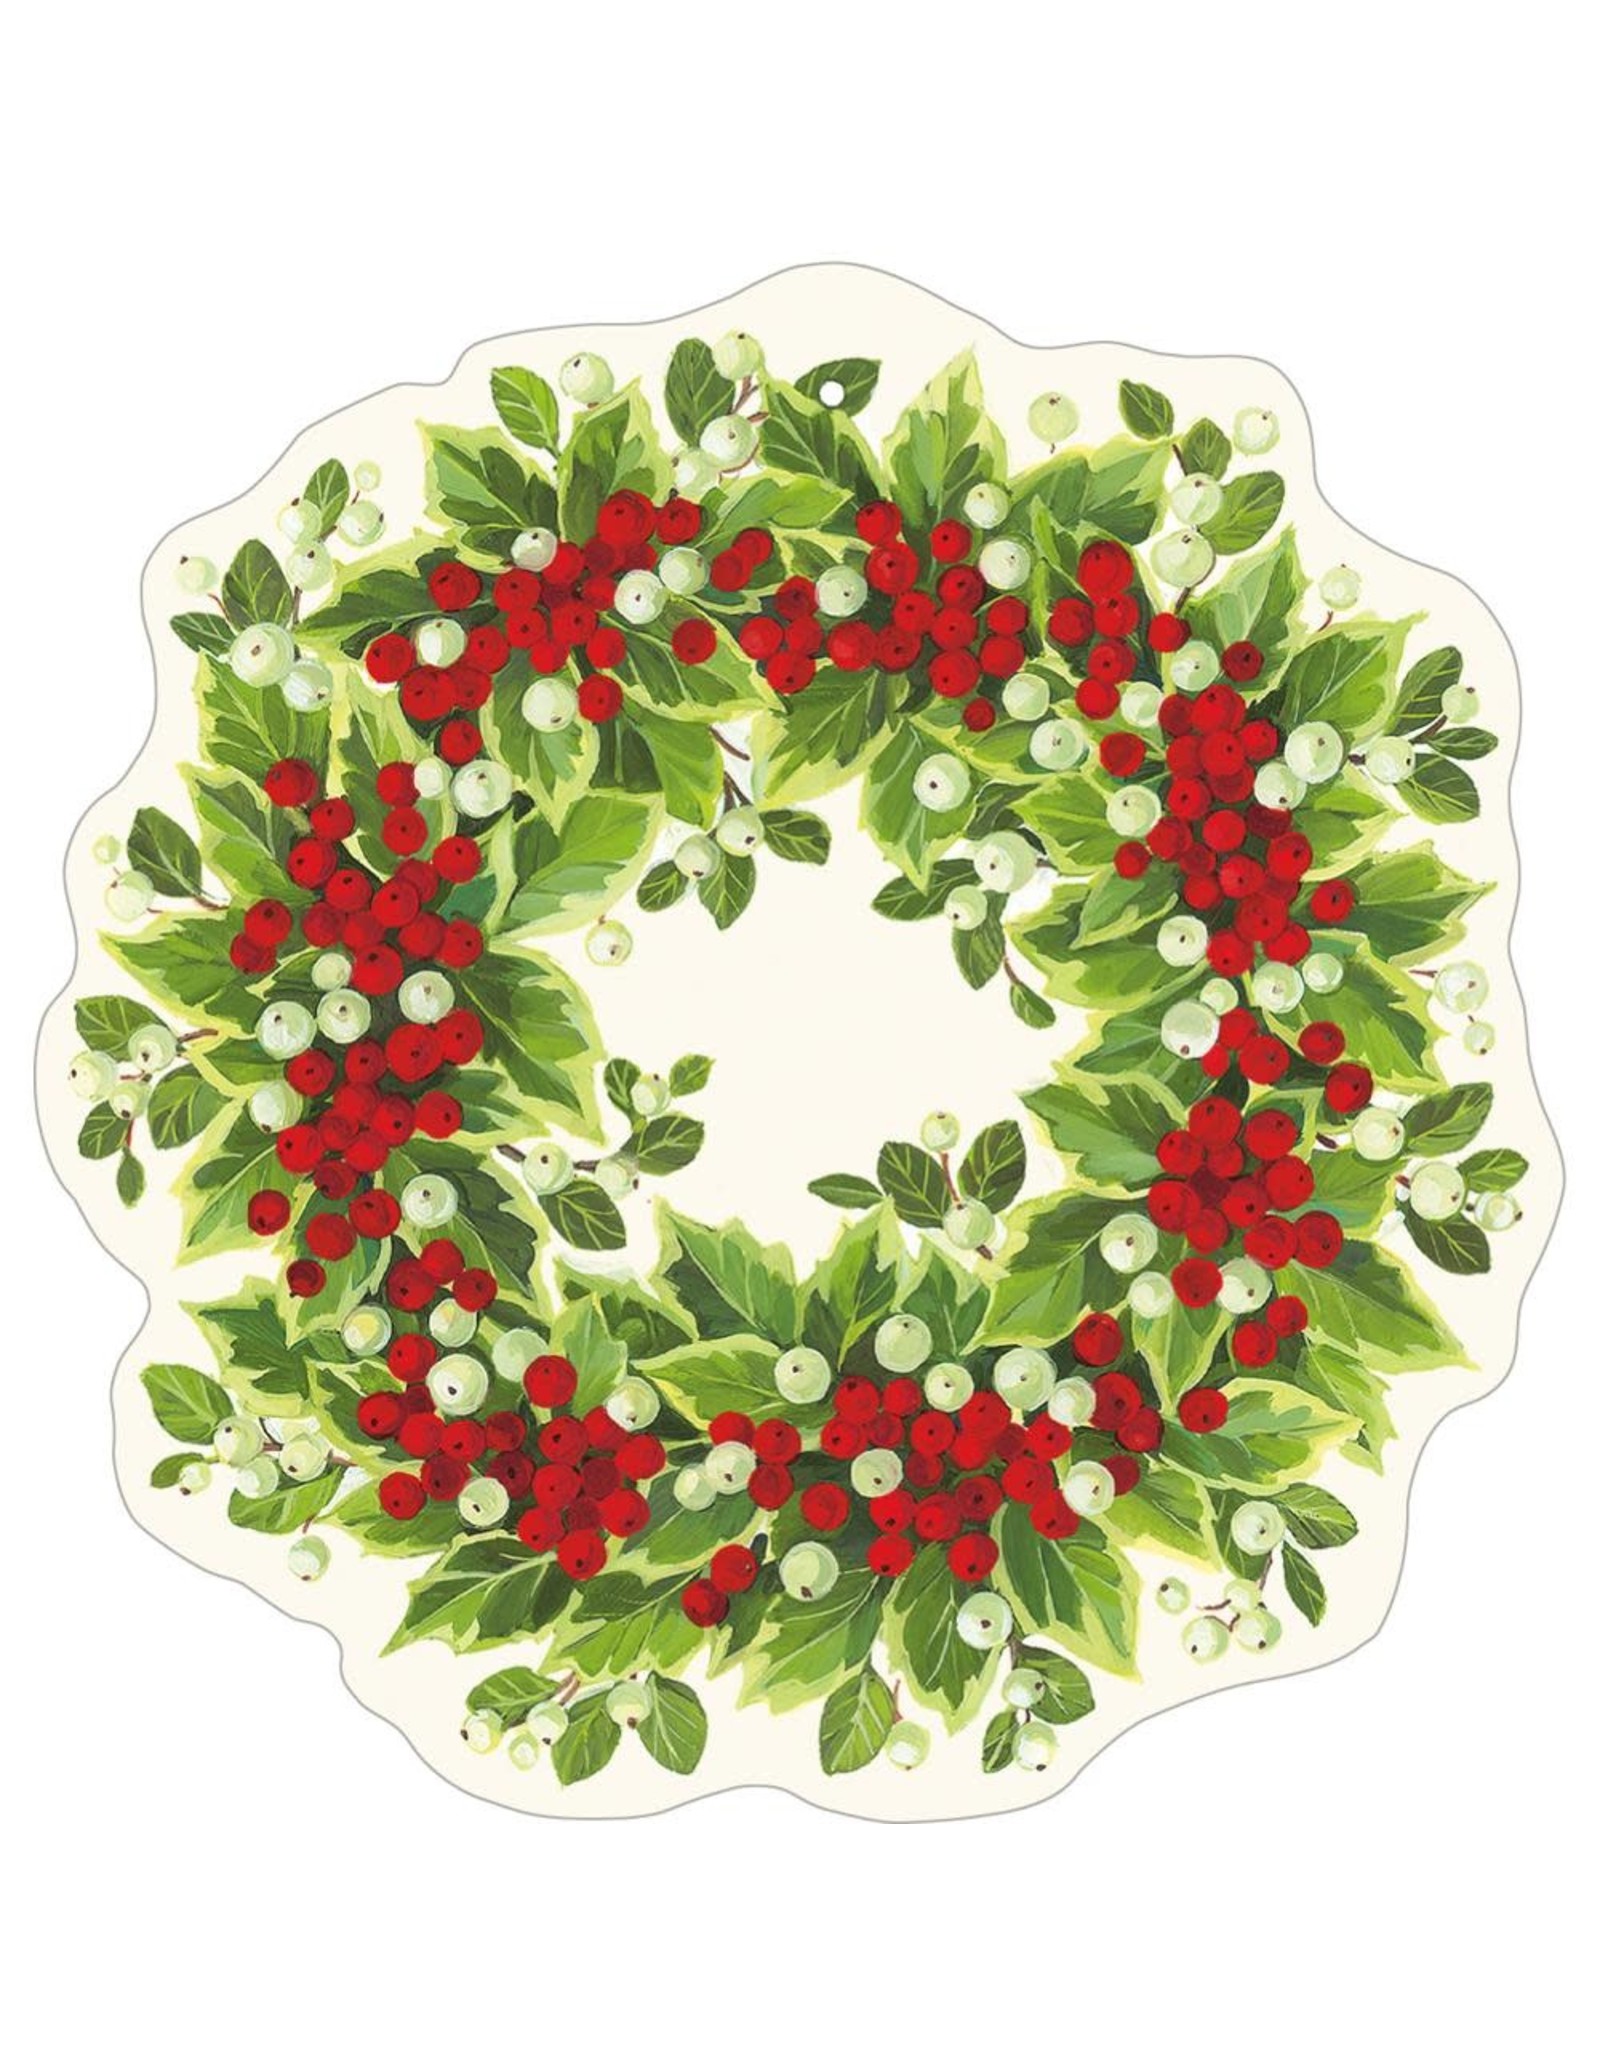 Caspari Ornament Gift Tags 4pk Die-Cut Christmas Holly & Berry Wreath